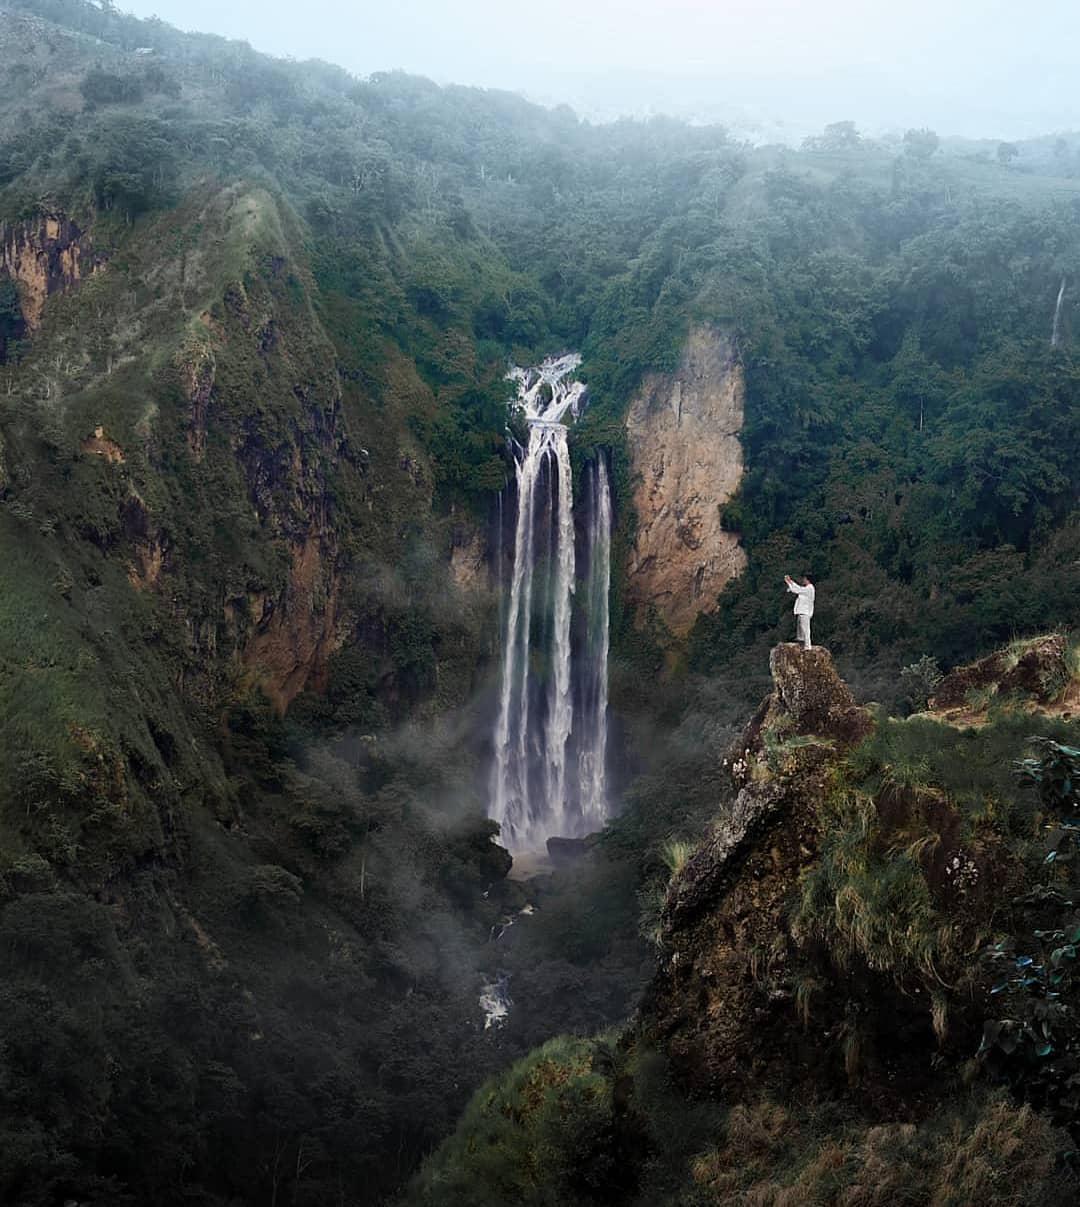 Air terjun Tama'lulua dari atas bukit via Instagram anuakbar_